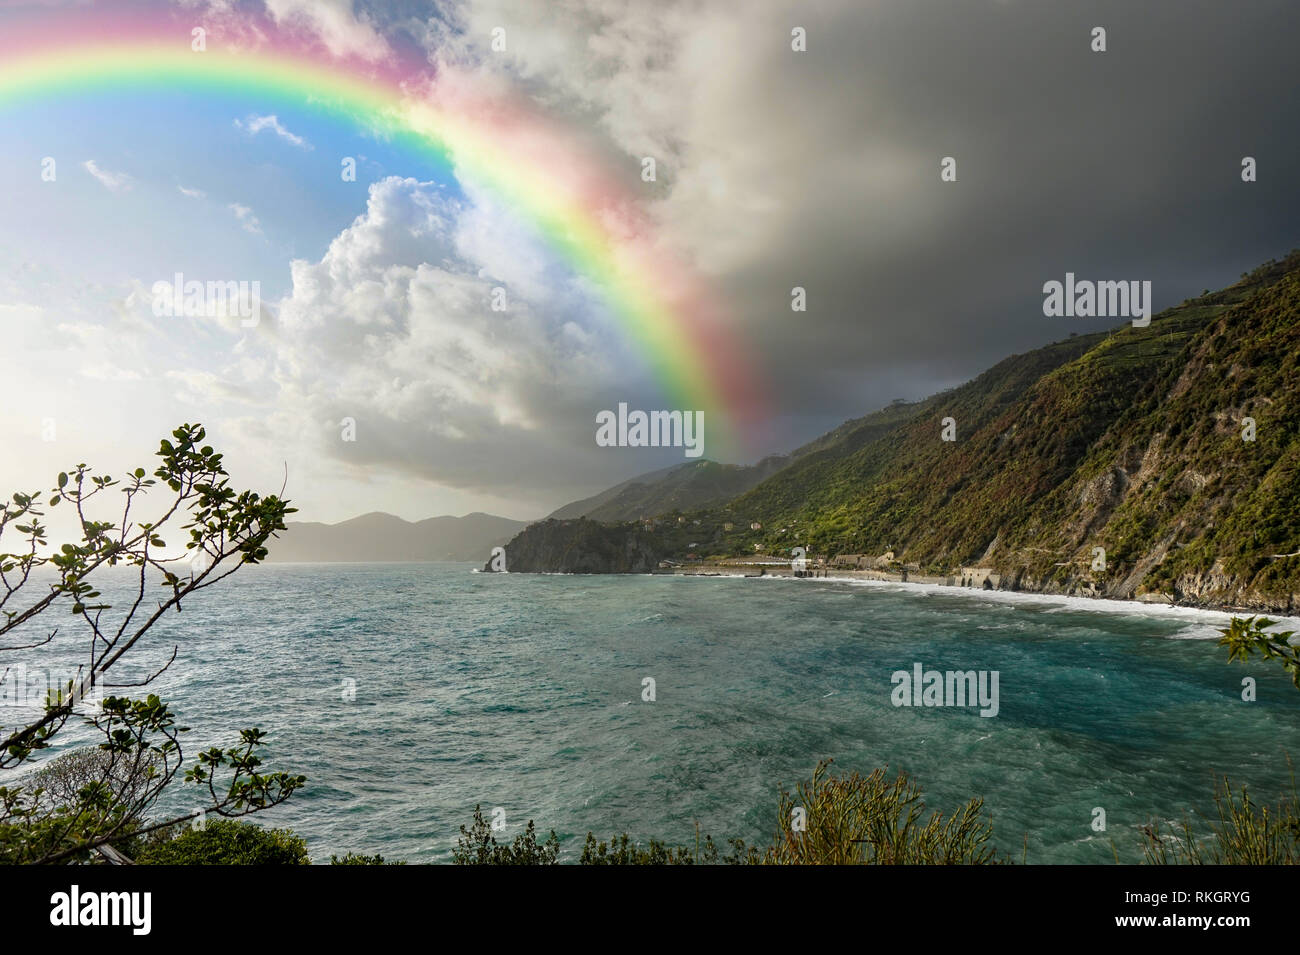 Schönen italienischen Küste mit Rainbow Sunny und bewölkter Himmel Stockfoto